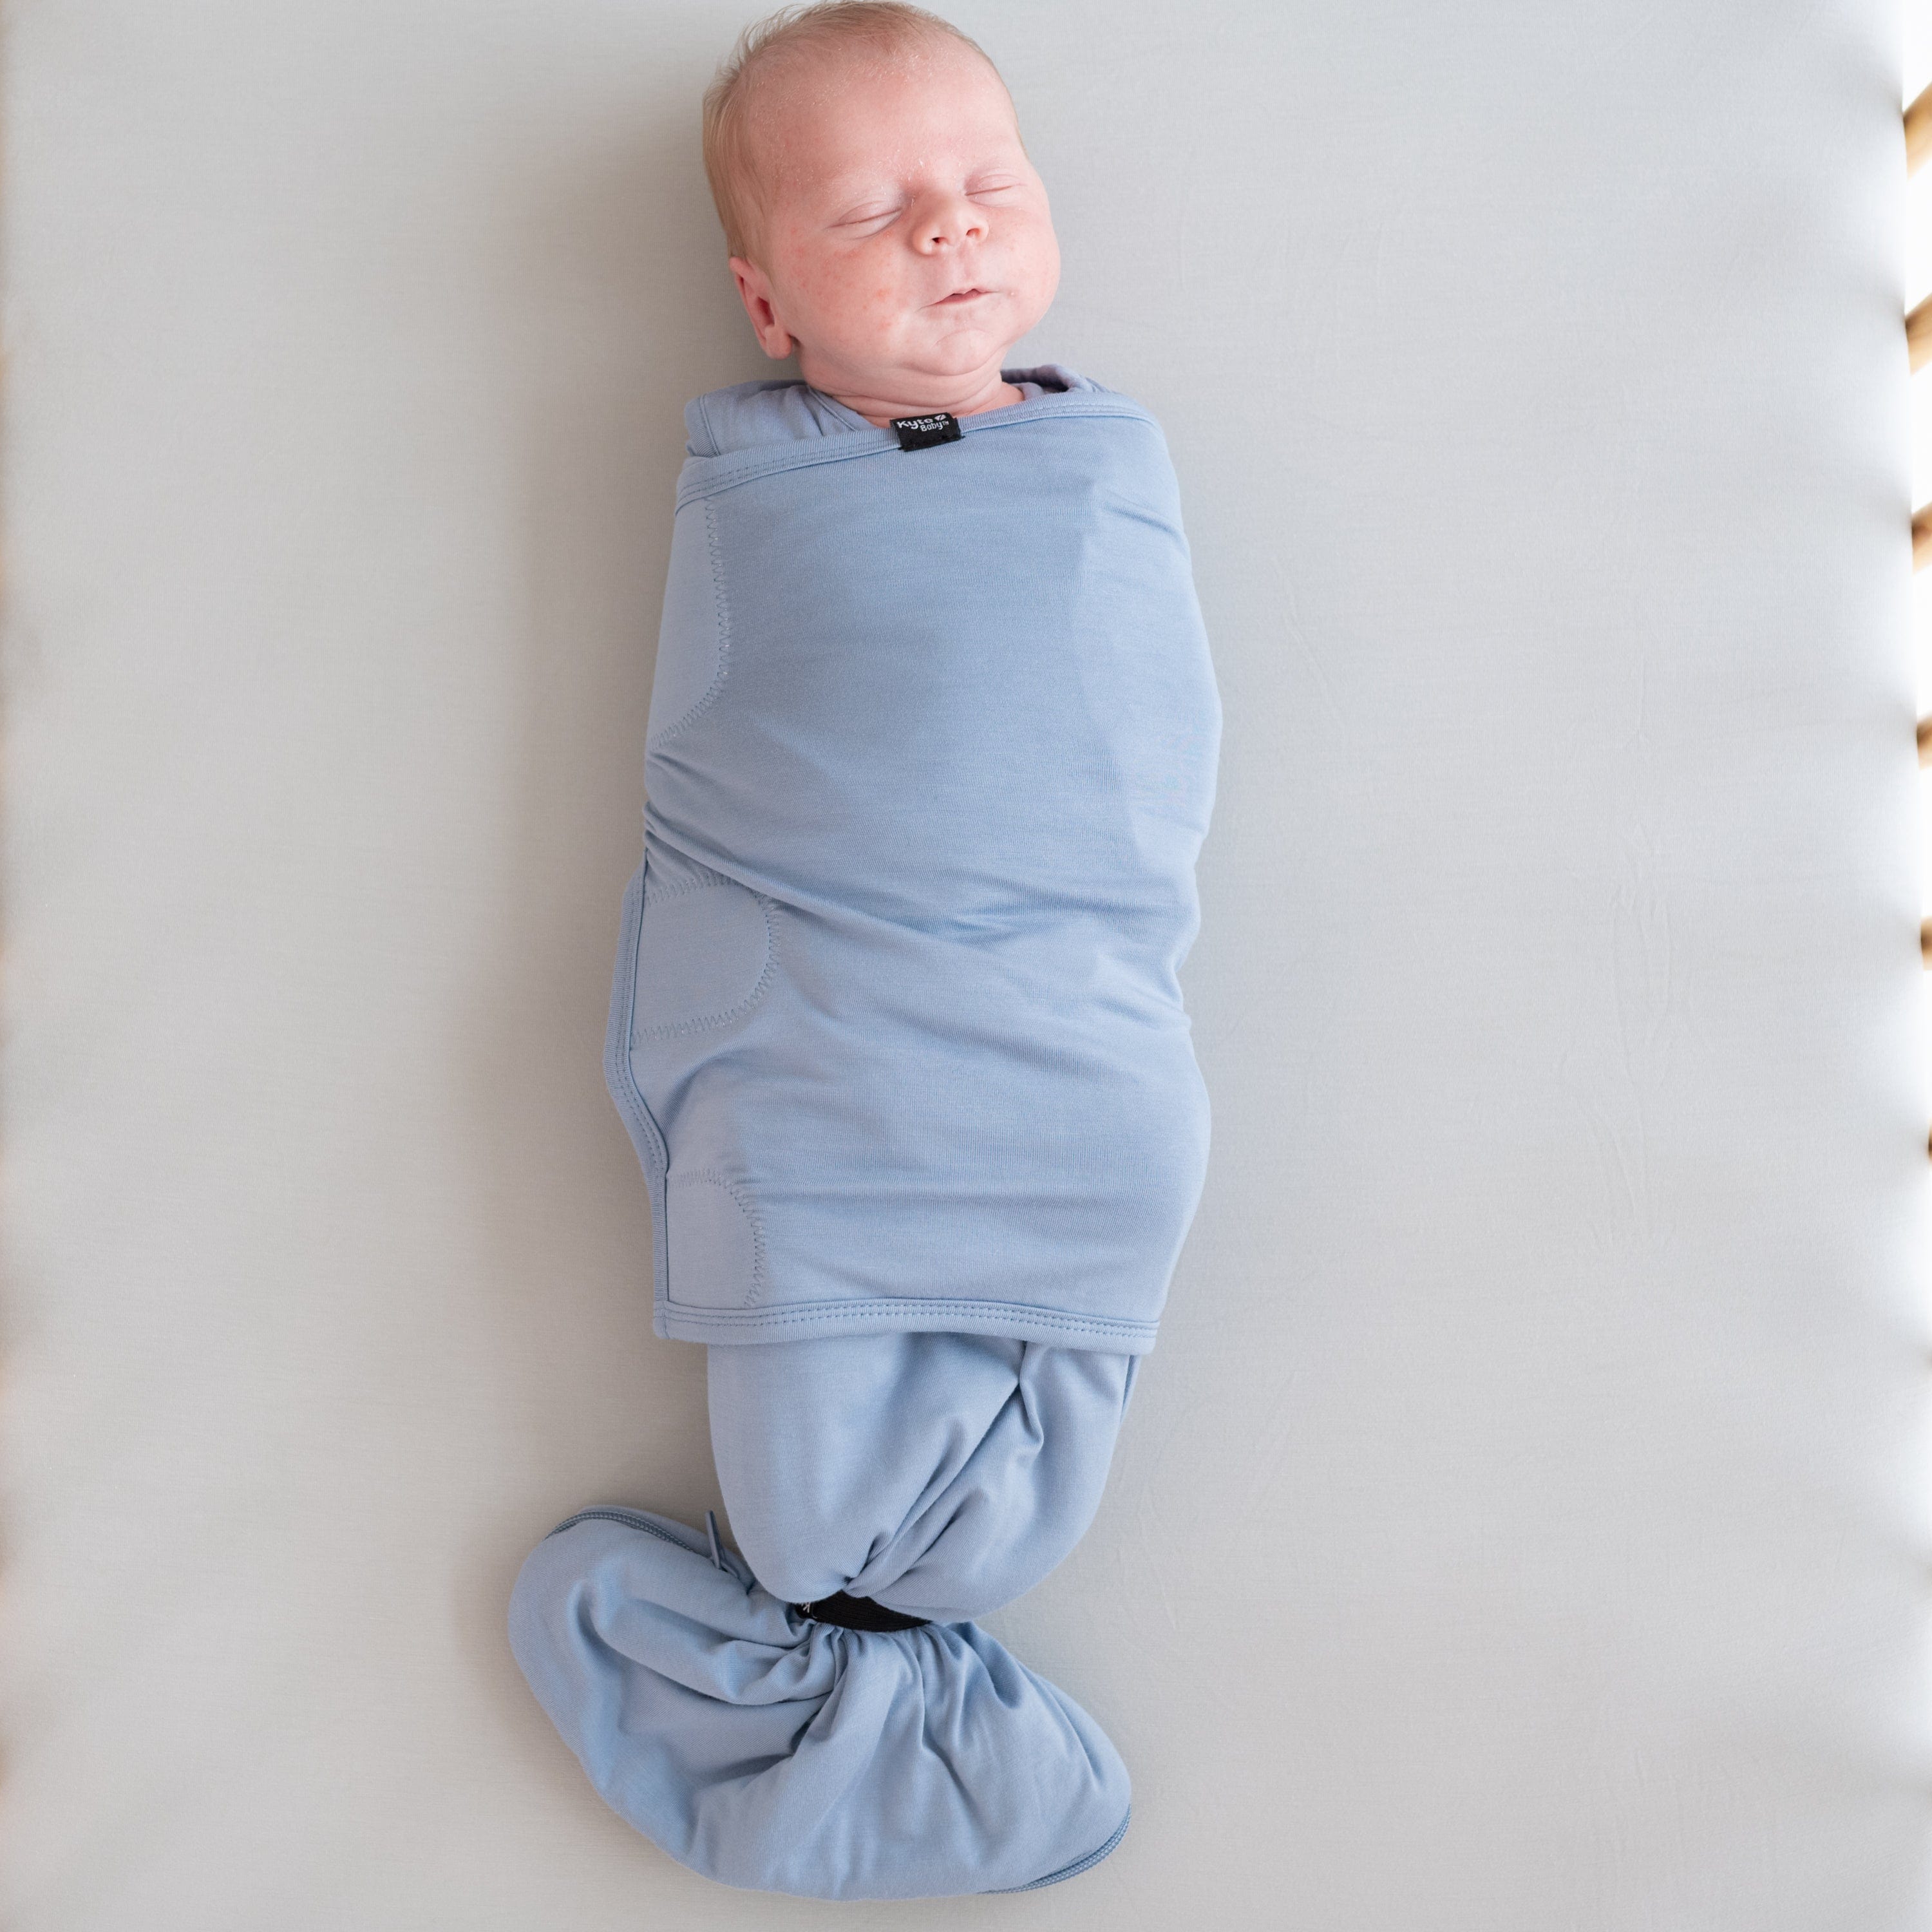 Baby wearing Kyte Baby Sleep Bag Swaddler in Slate with elastic band